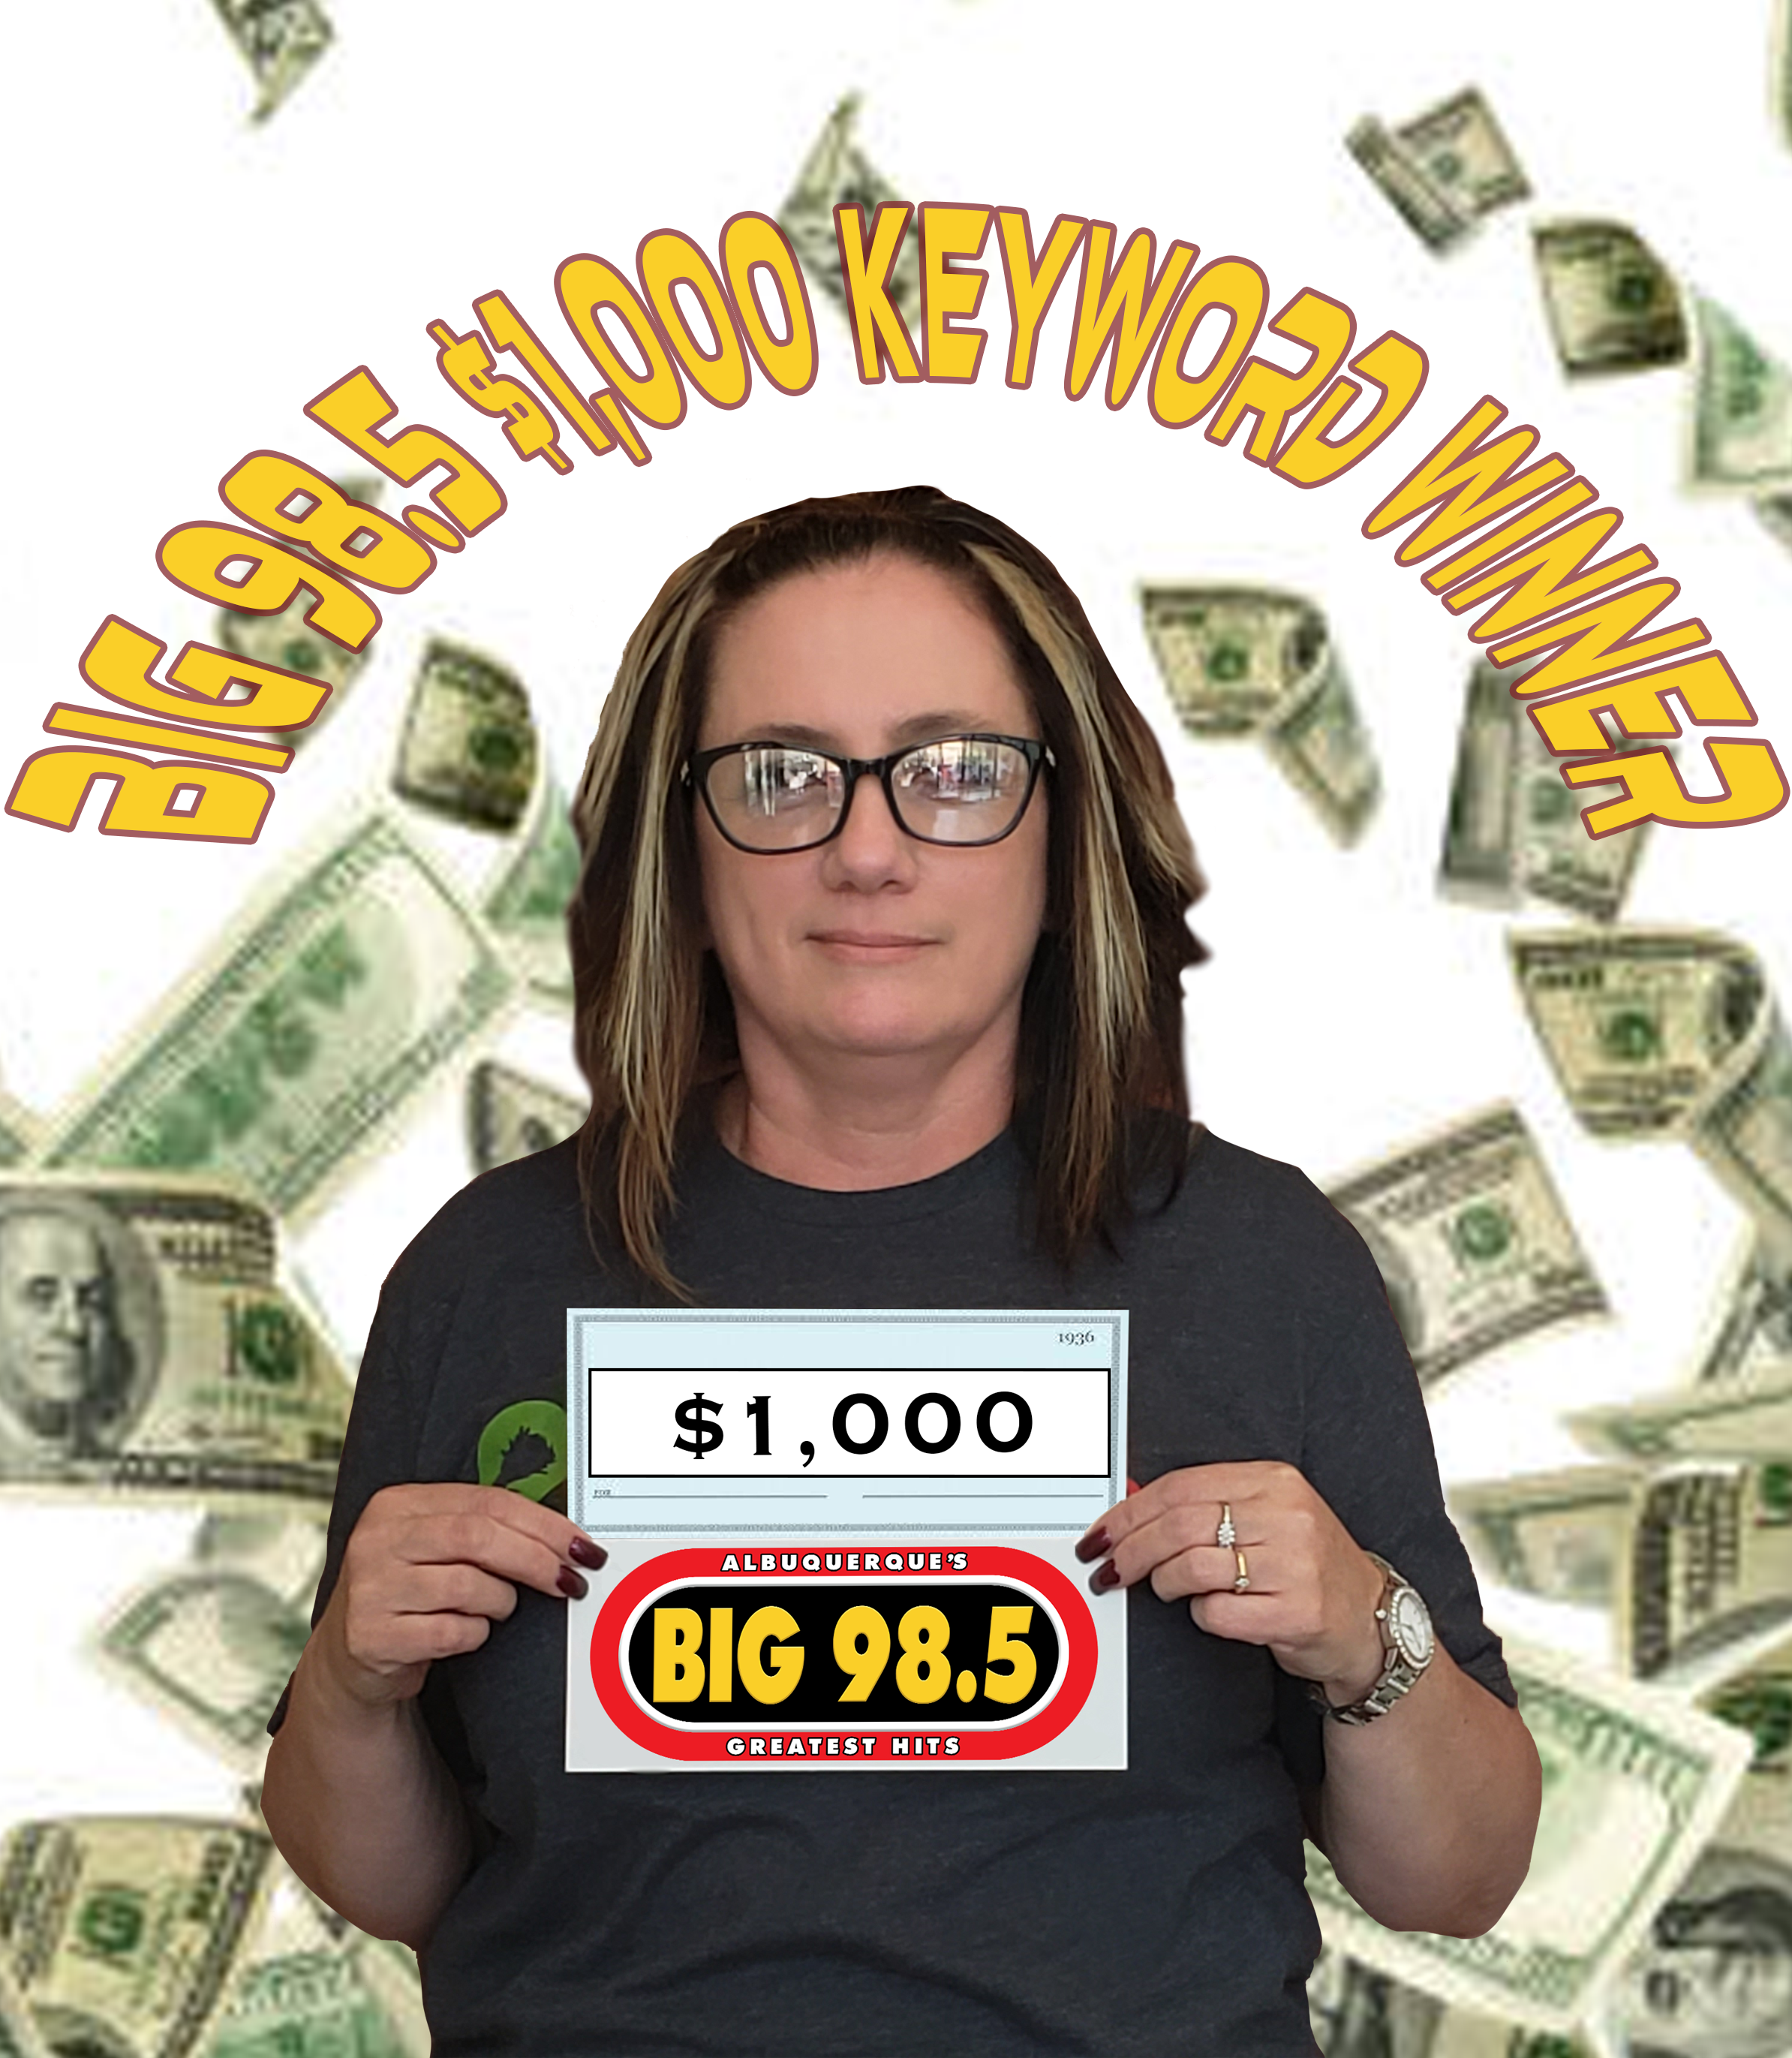 Gloria won $1,000.00